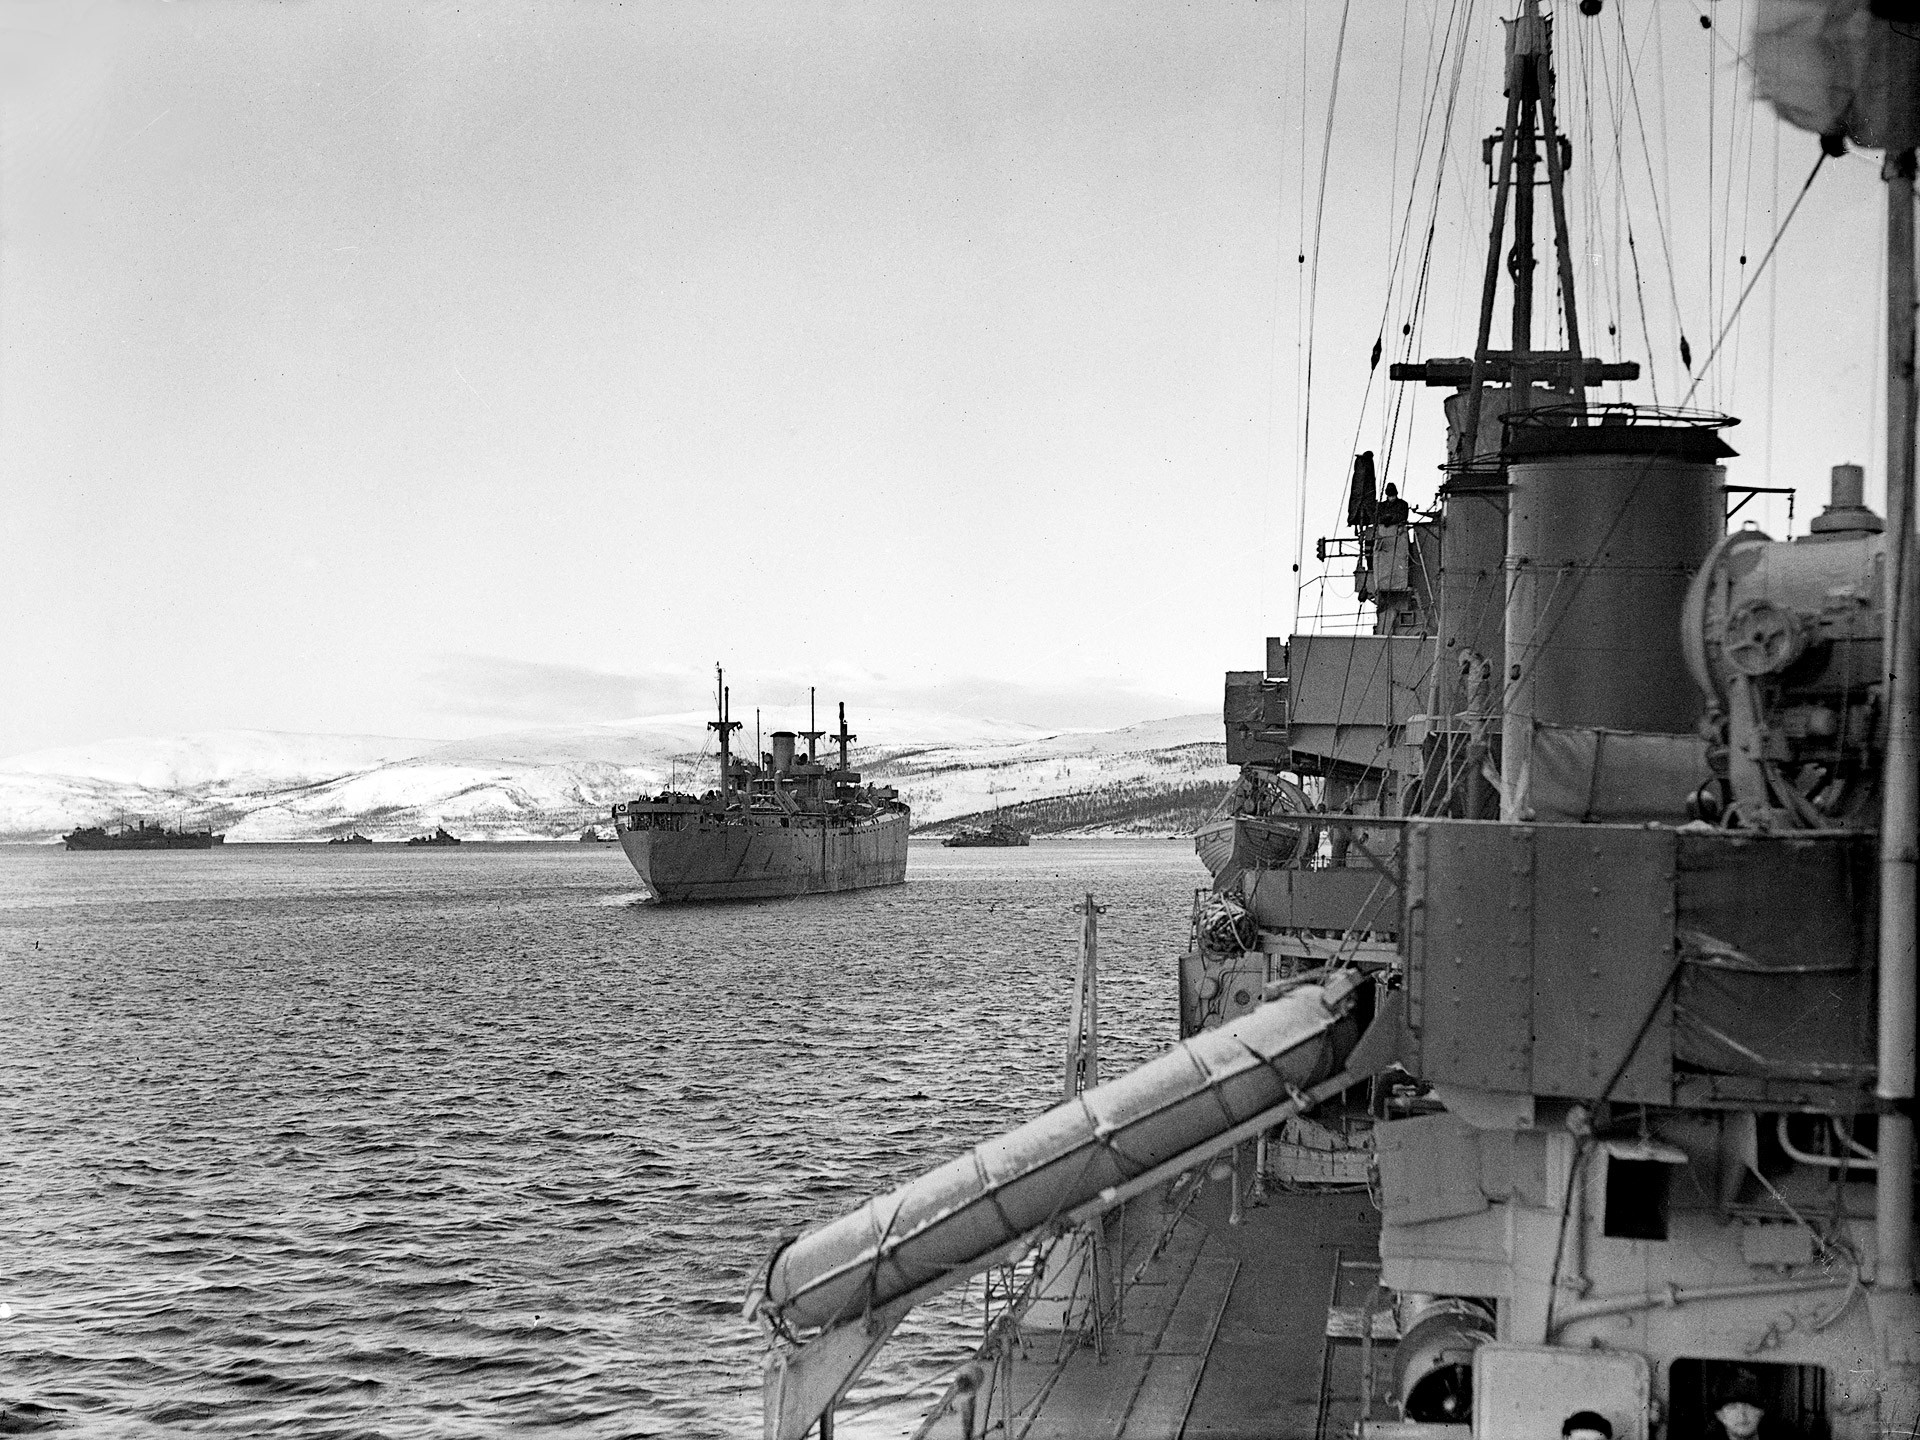 Convoy RA-53 departs Kola Inlet, March 1, 1943